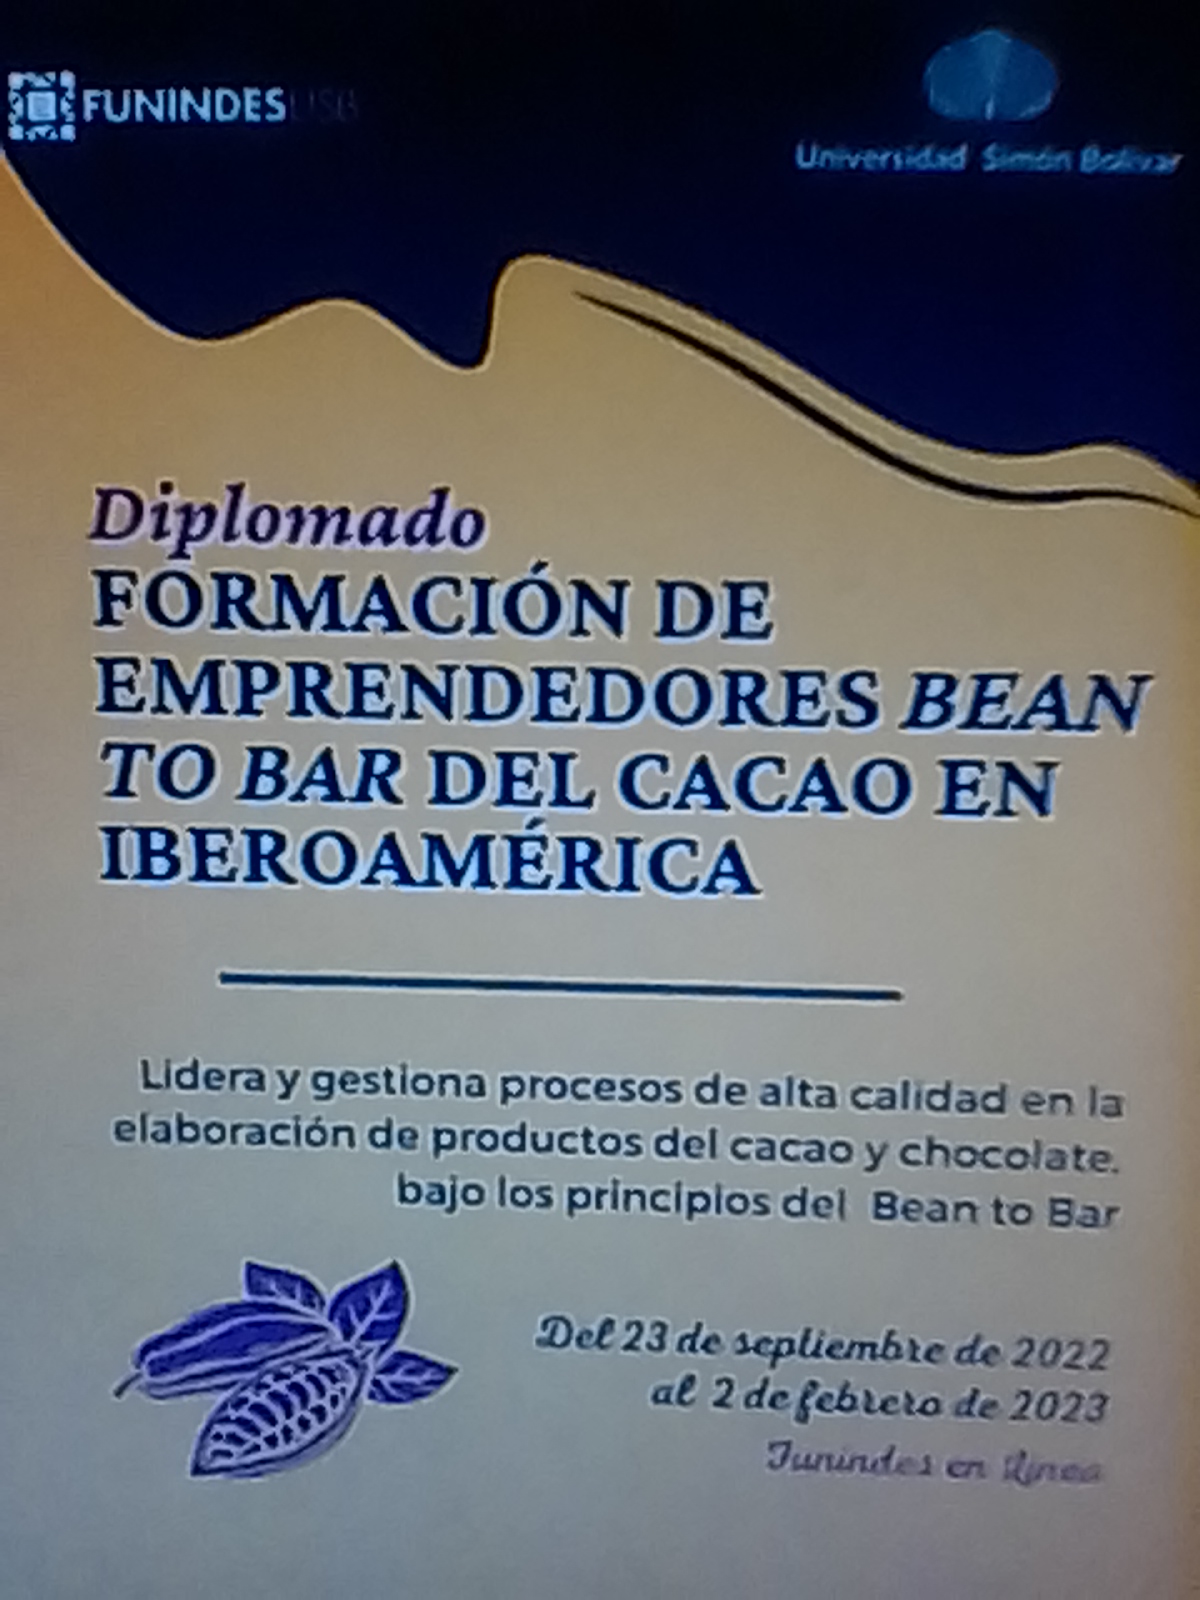 Abre inscripciones el Diplomado Formación de Emprendedores Bean to Bar del Cacao en Iberoamérica